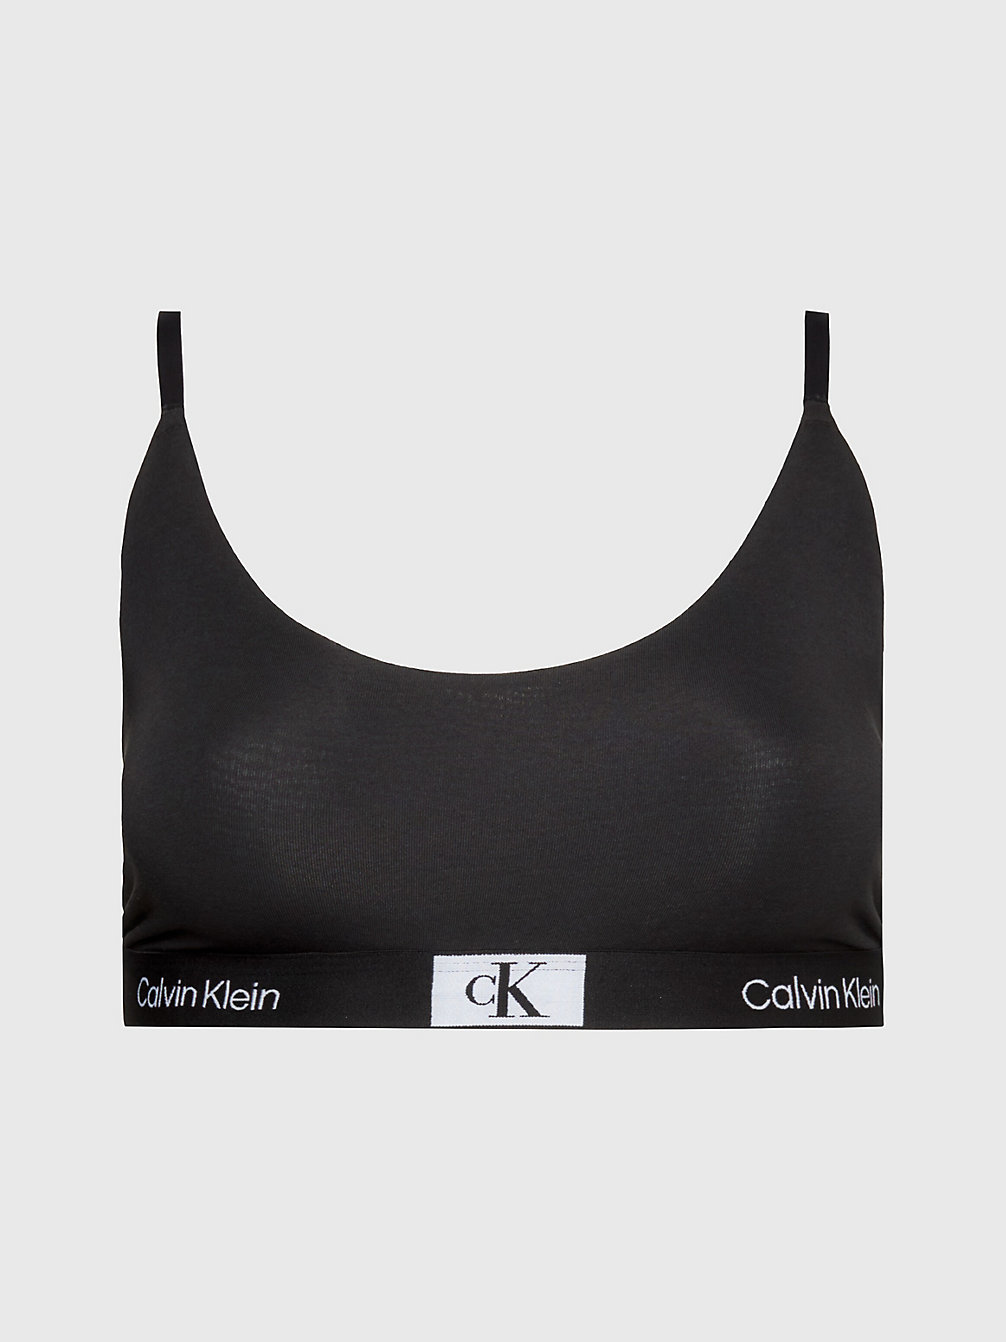 BLACK String-Bralette In Großen Größen - Ck96 undefined Damen Calvin Klein